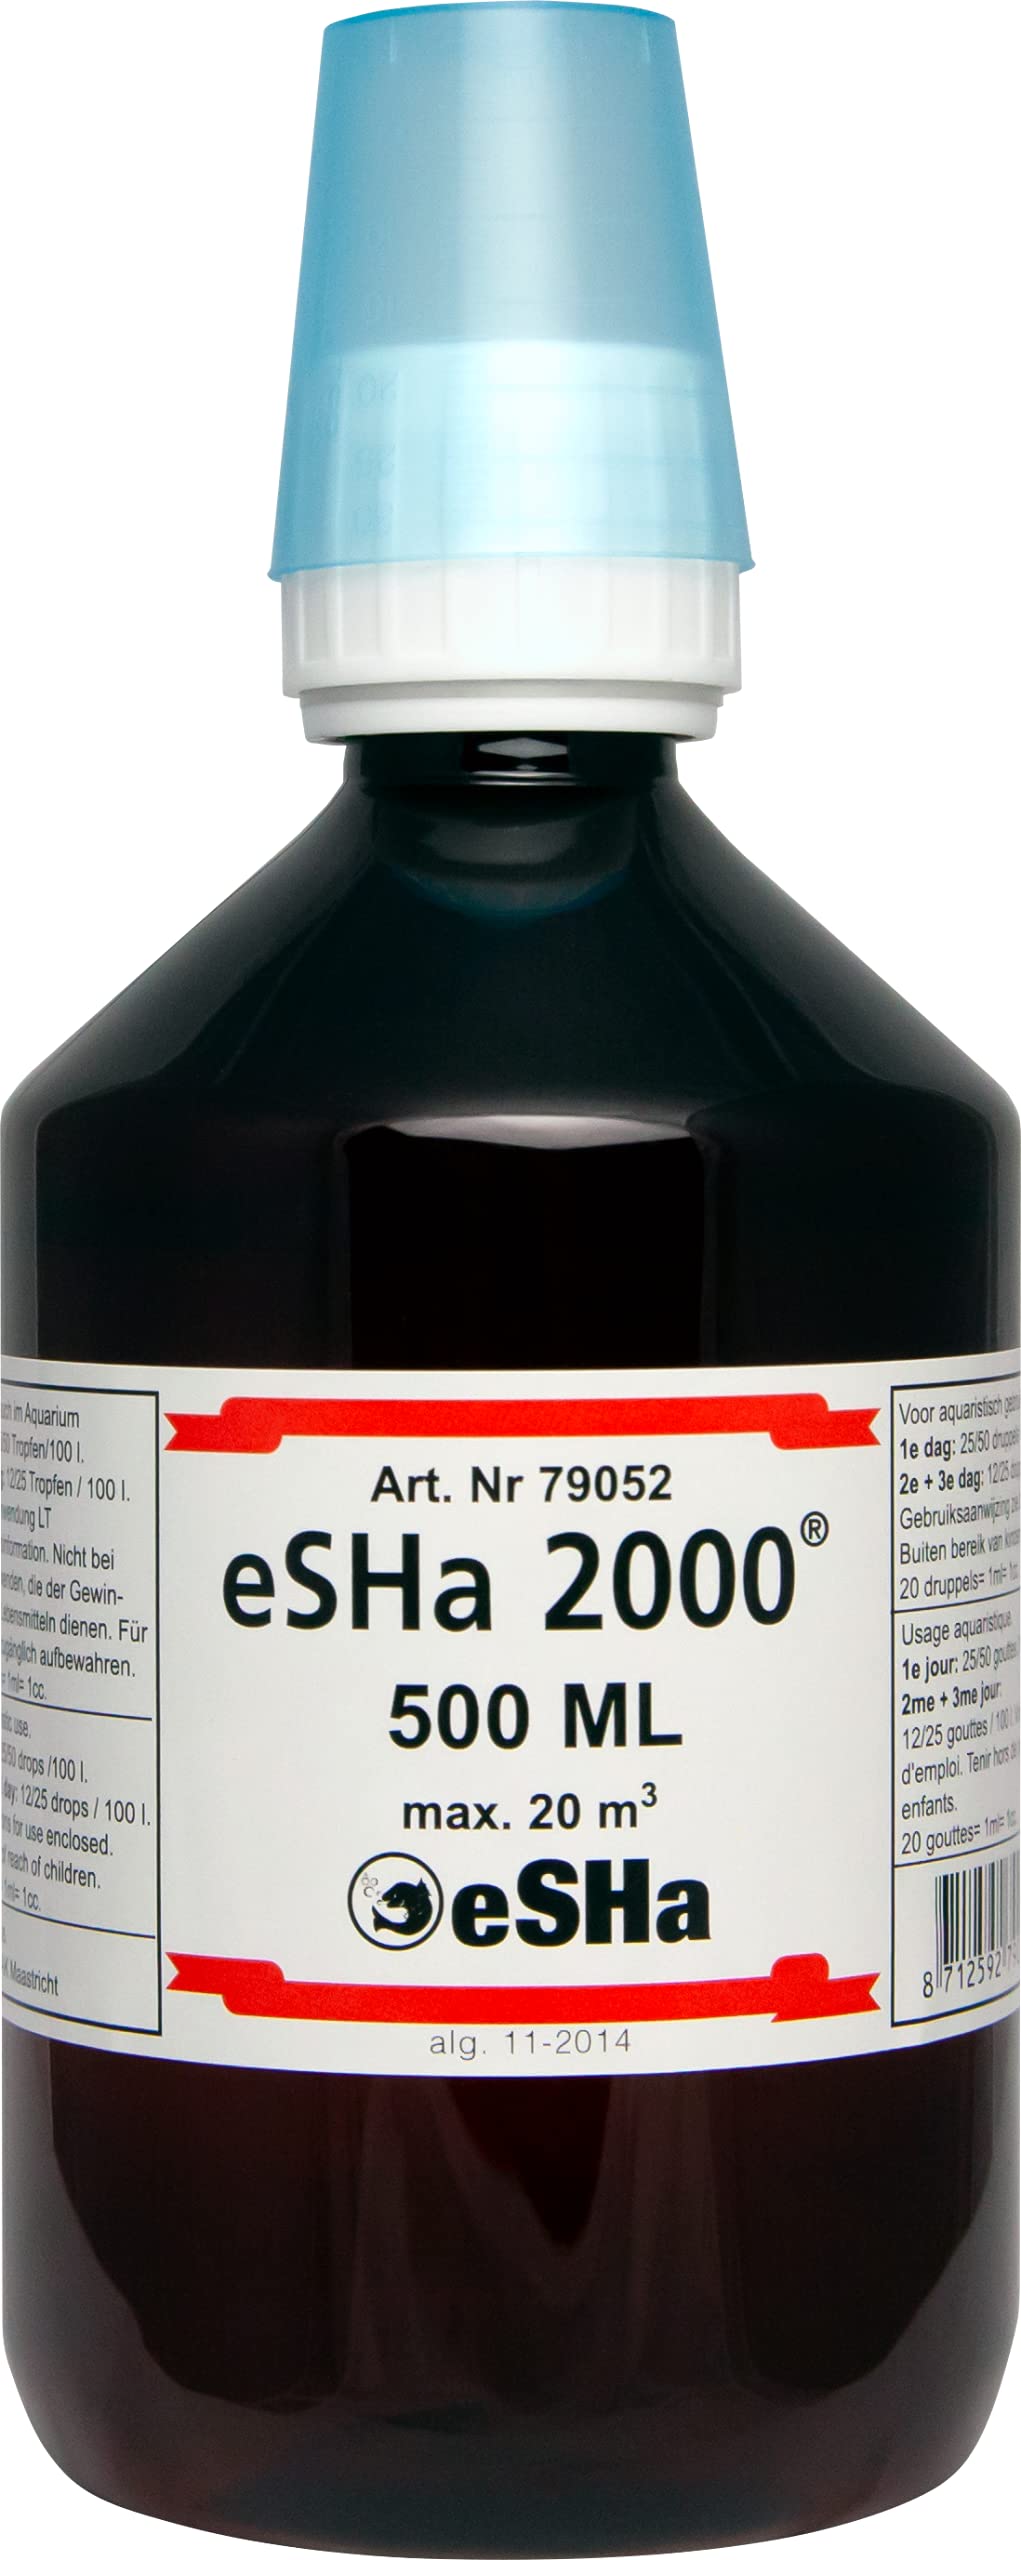 eSHa 2000 – Breitbandheilmittel gegen Verpilzungen, Flossenfäule und bakterielle Krankheiten - 500 ml